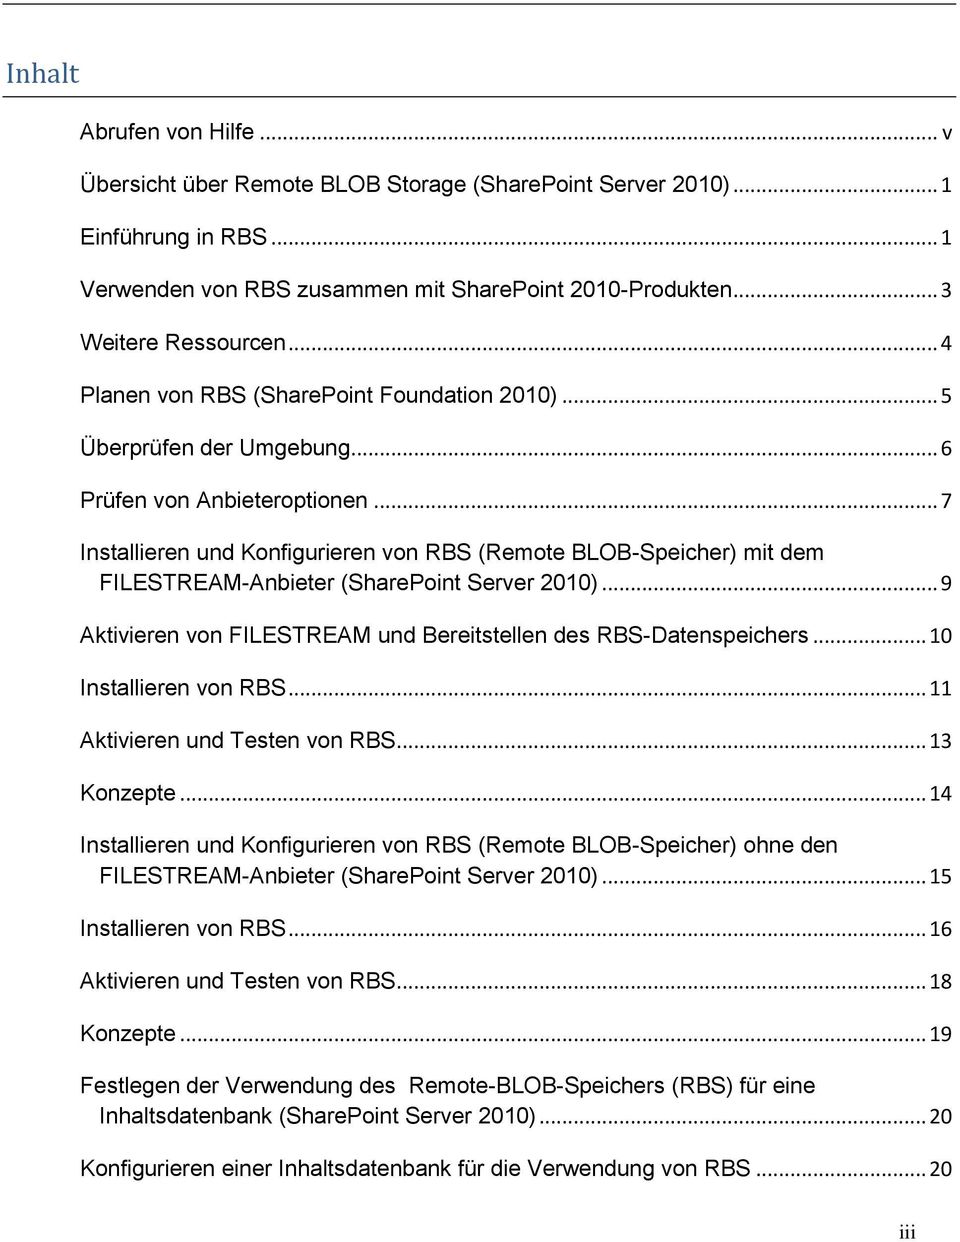 .. 7 Installieren und Konfigurieren von RBS (Remote BLOB-Speicher) mit dem FILESTREAM-Anbieter (SharePoint Server 2010)... 9 Aktivieren von FILESTREAM und Bereitstellen des RBS-Datenspeichers.